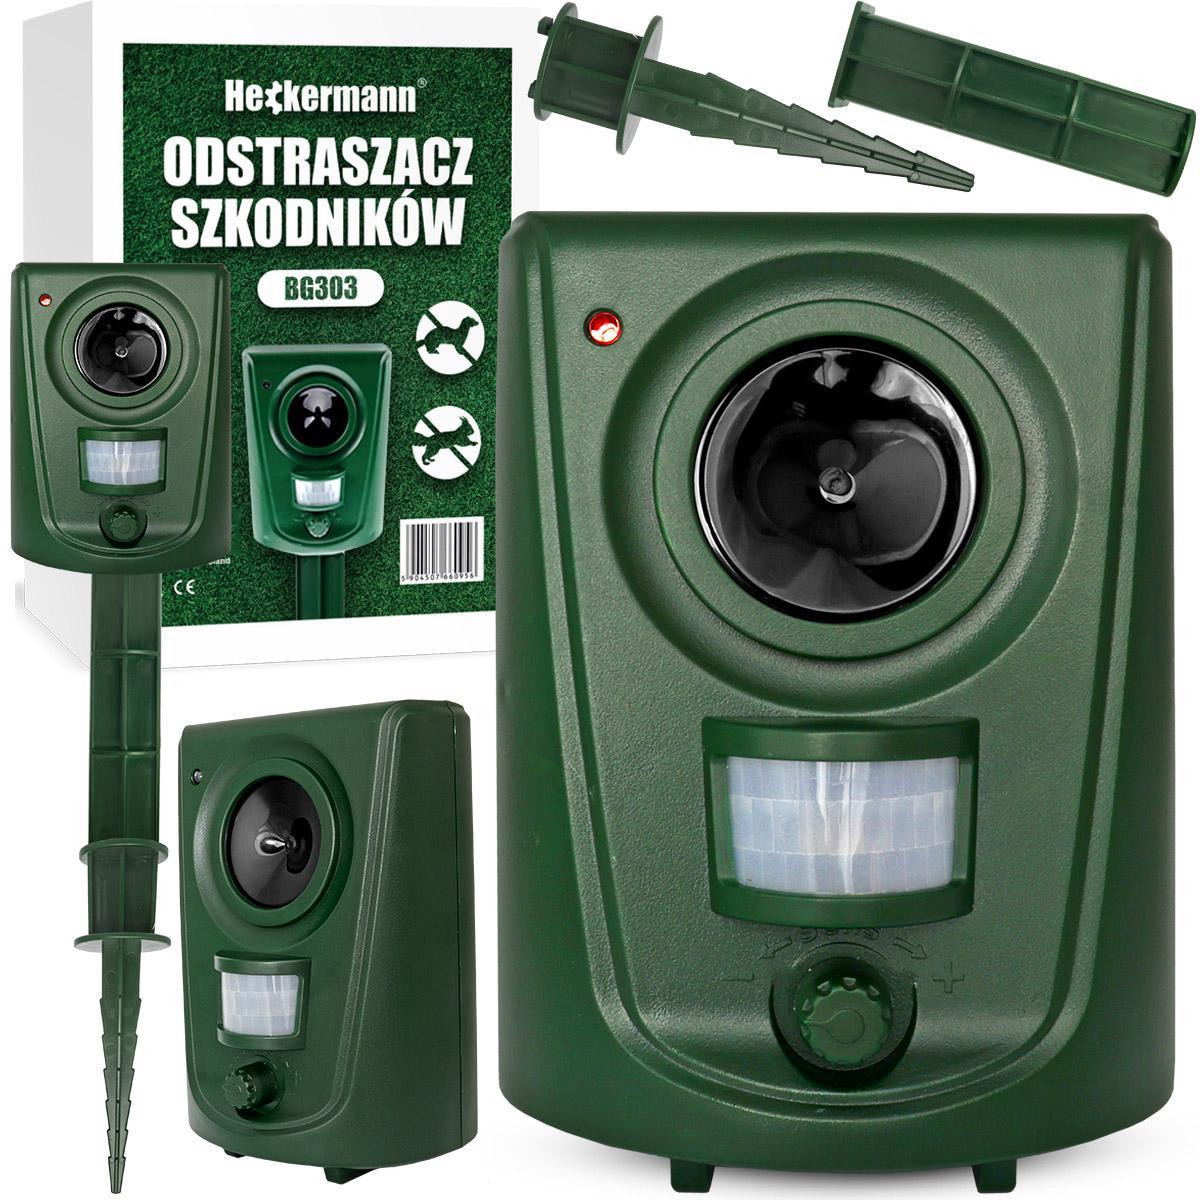 Odstraszacz ultradźwiękowy Heckermann BG303 nr. 1